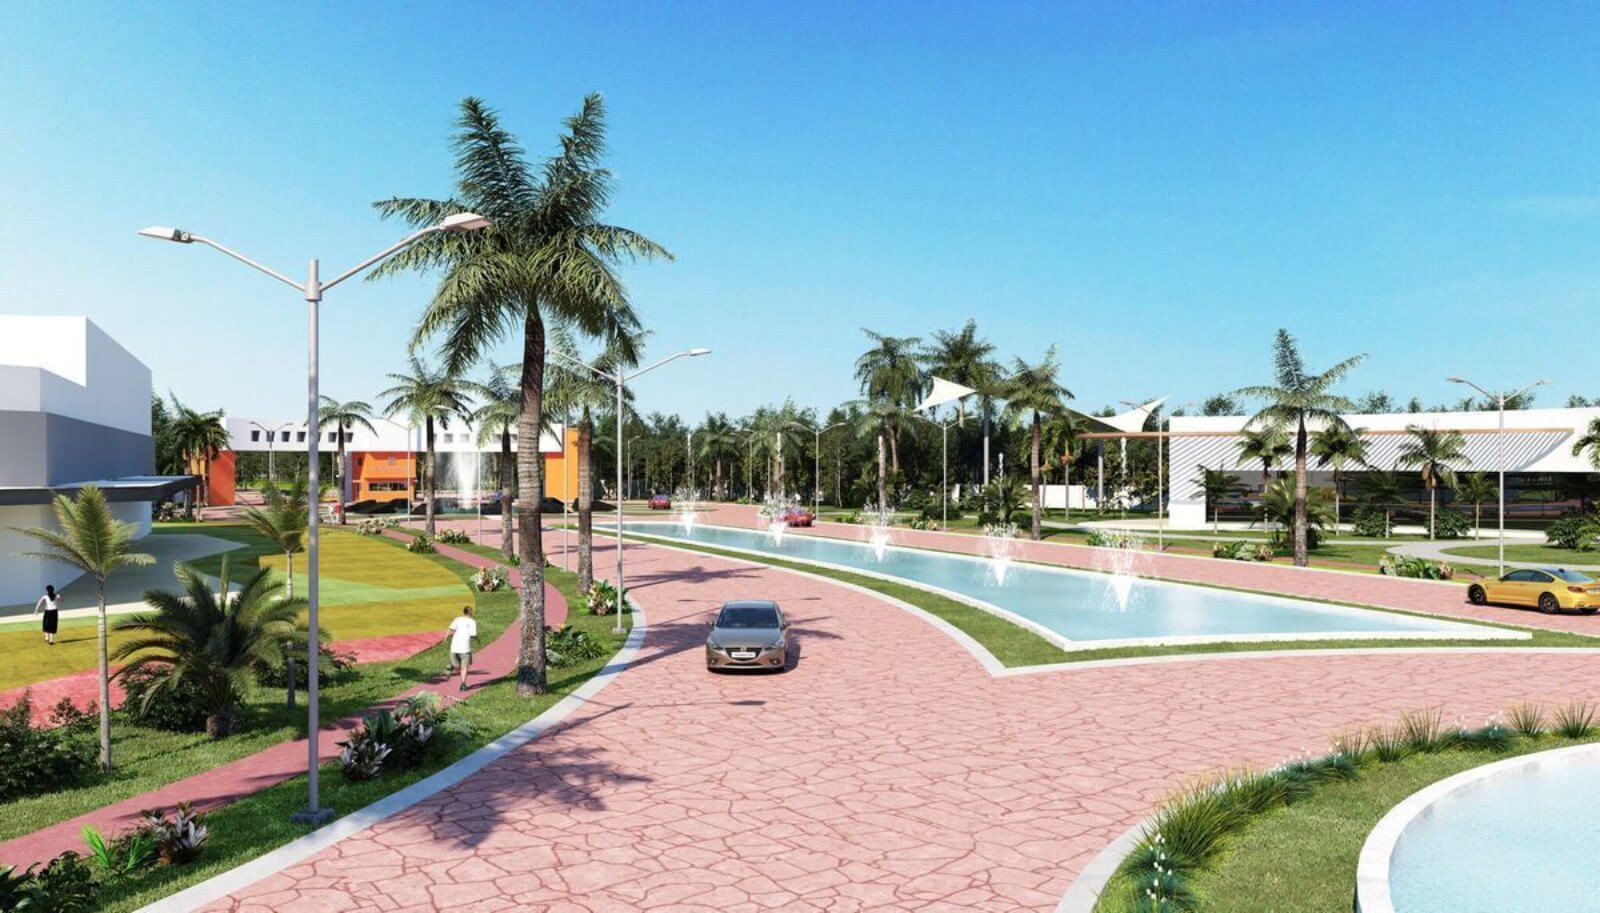 Departamento con jardín y alberca, Gimnasio, pre-construcción, venta, Cancun